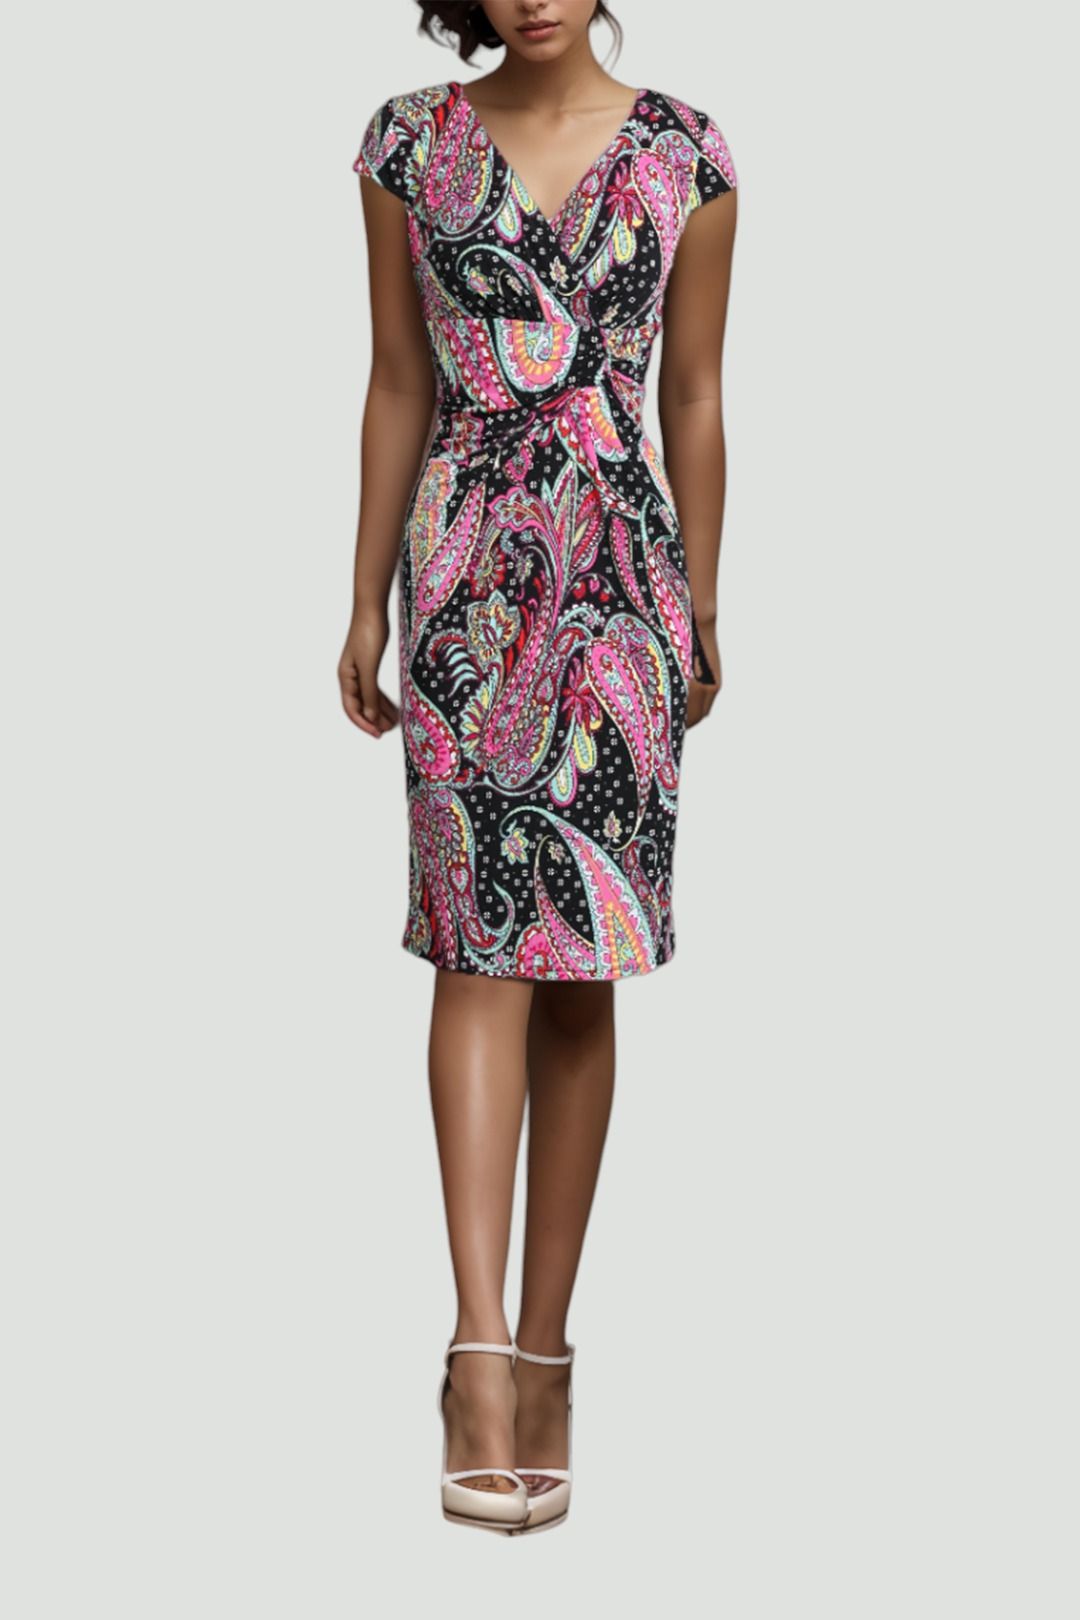 Anthea Crawford - Malibu Paisley Print Dress